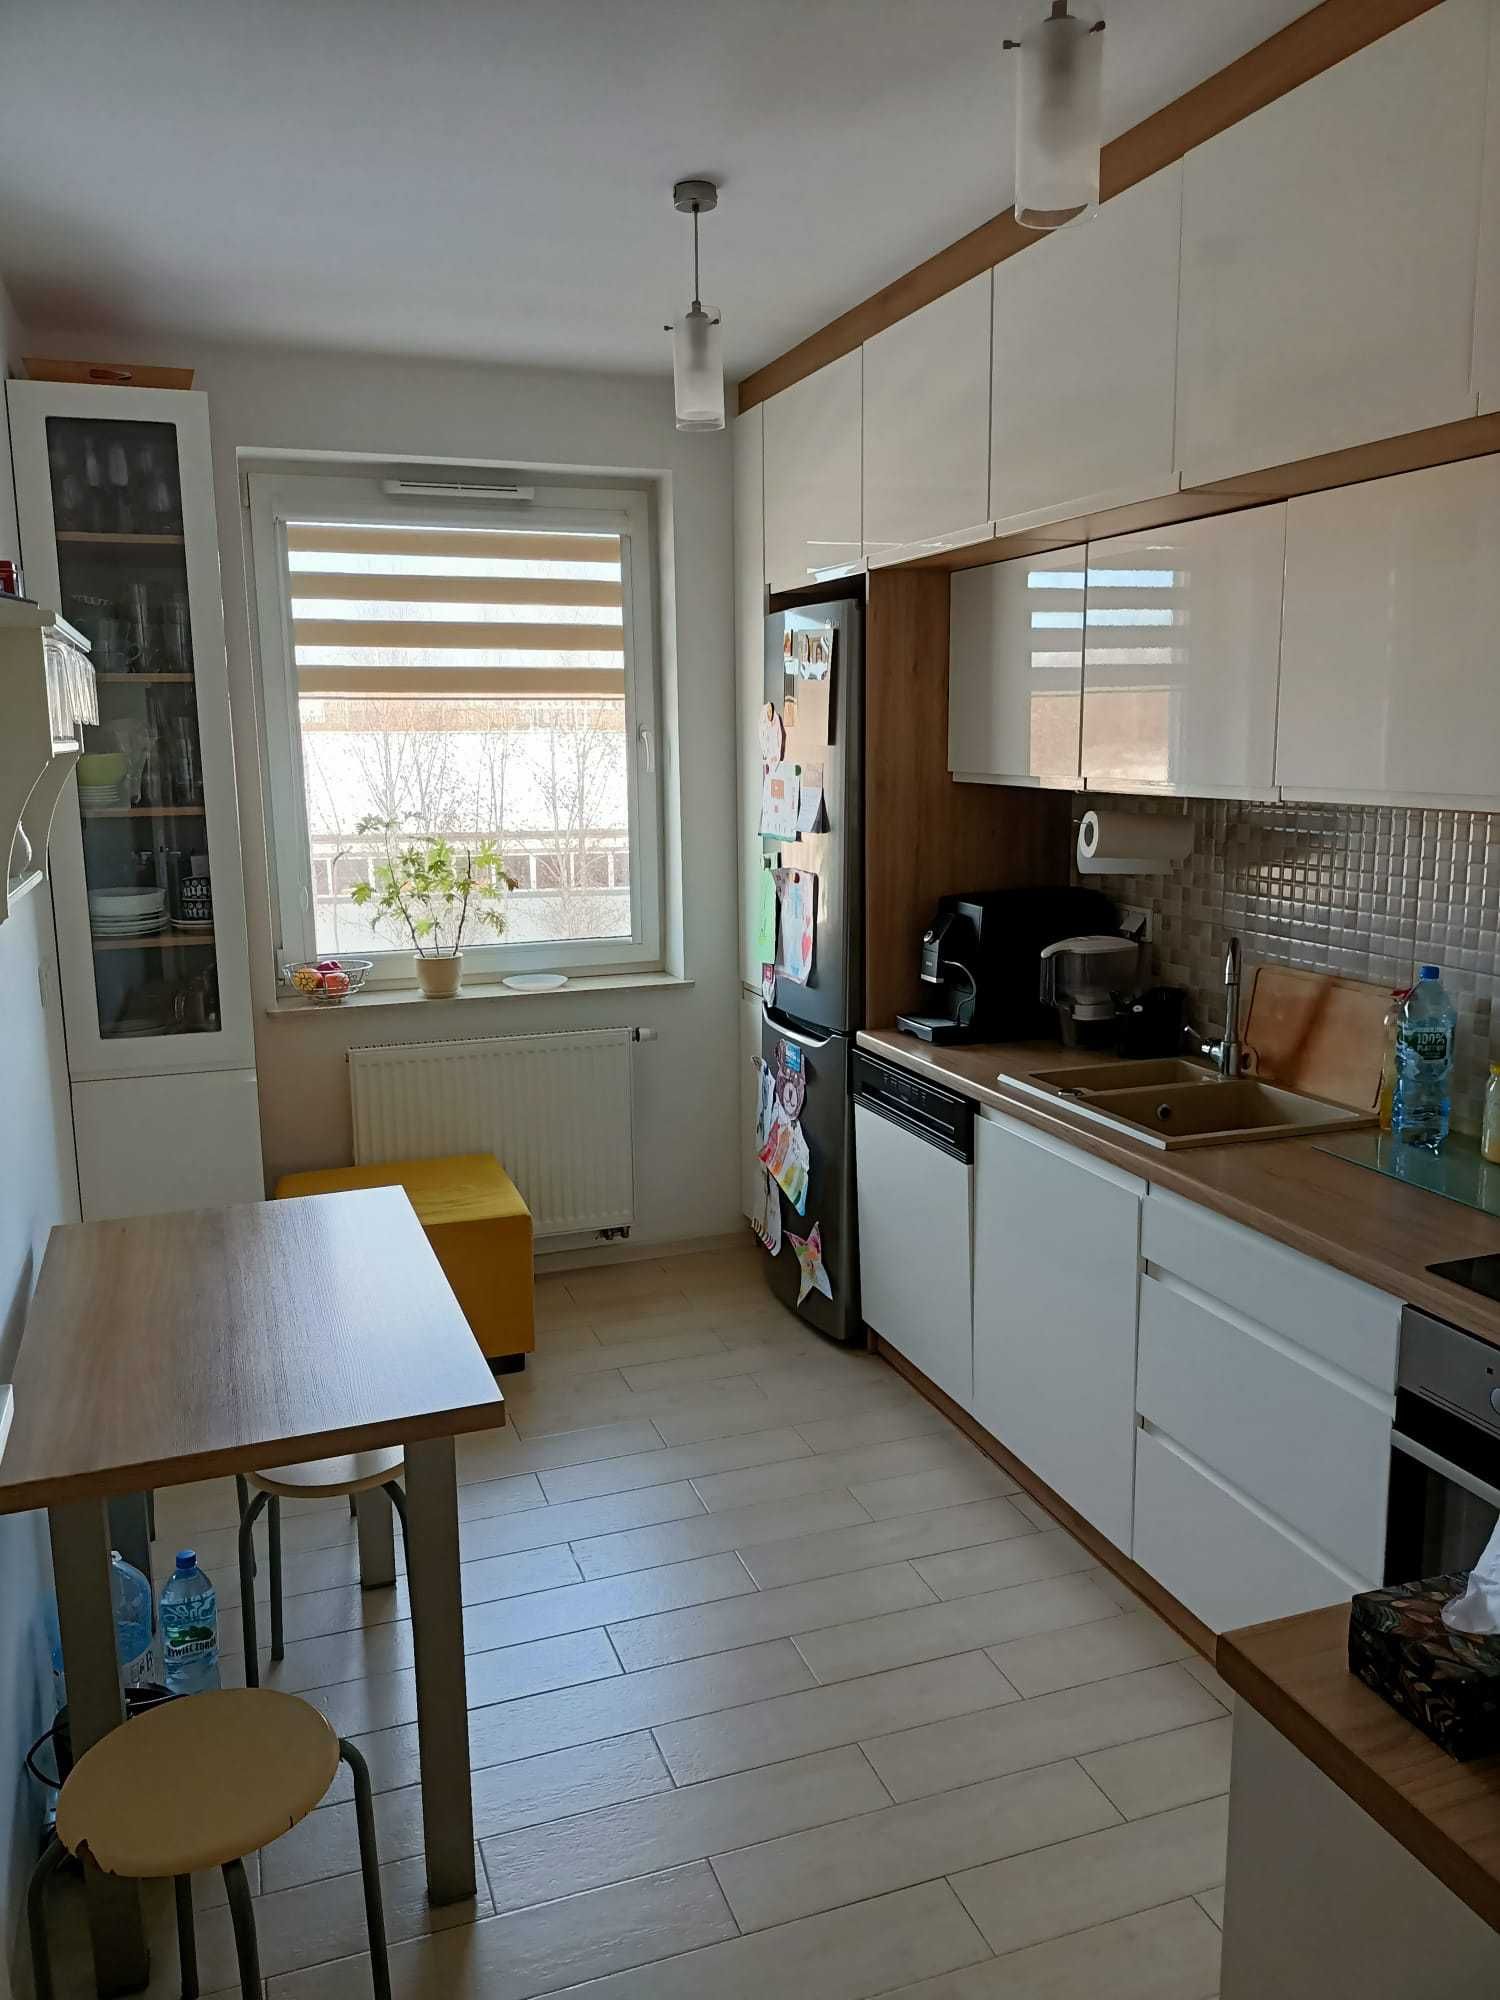 635 000 zł mieszkanie (3 pok. kuchnia, piwnica + m. postojowe)